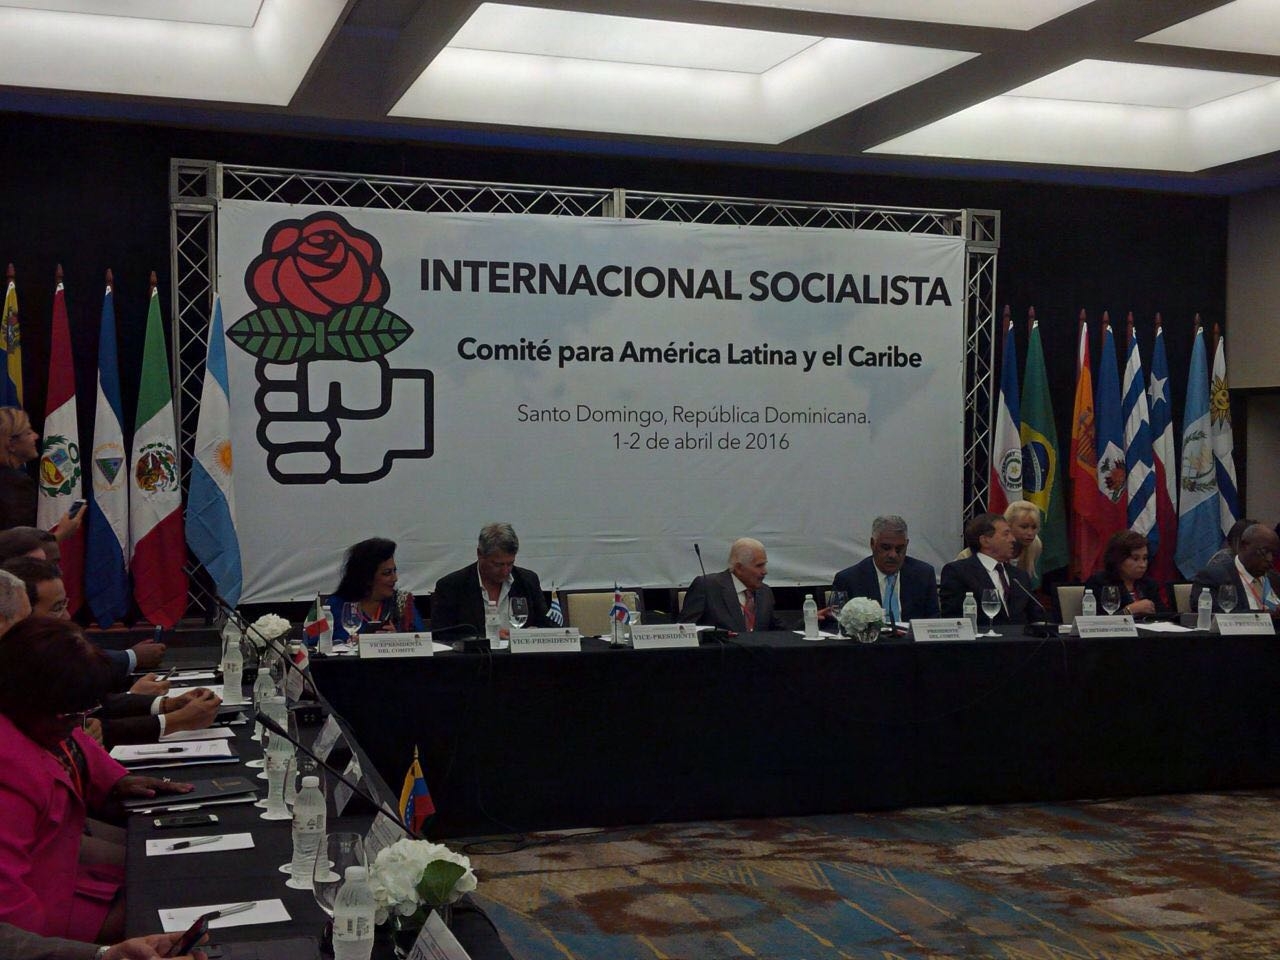 Internacional Socialista respalda transición a la democracia en Venezuela bajo la figura de Juan Guaidó (Documento)